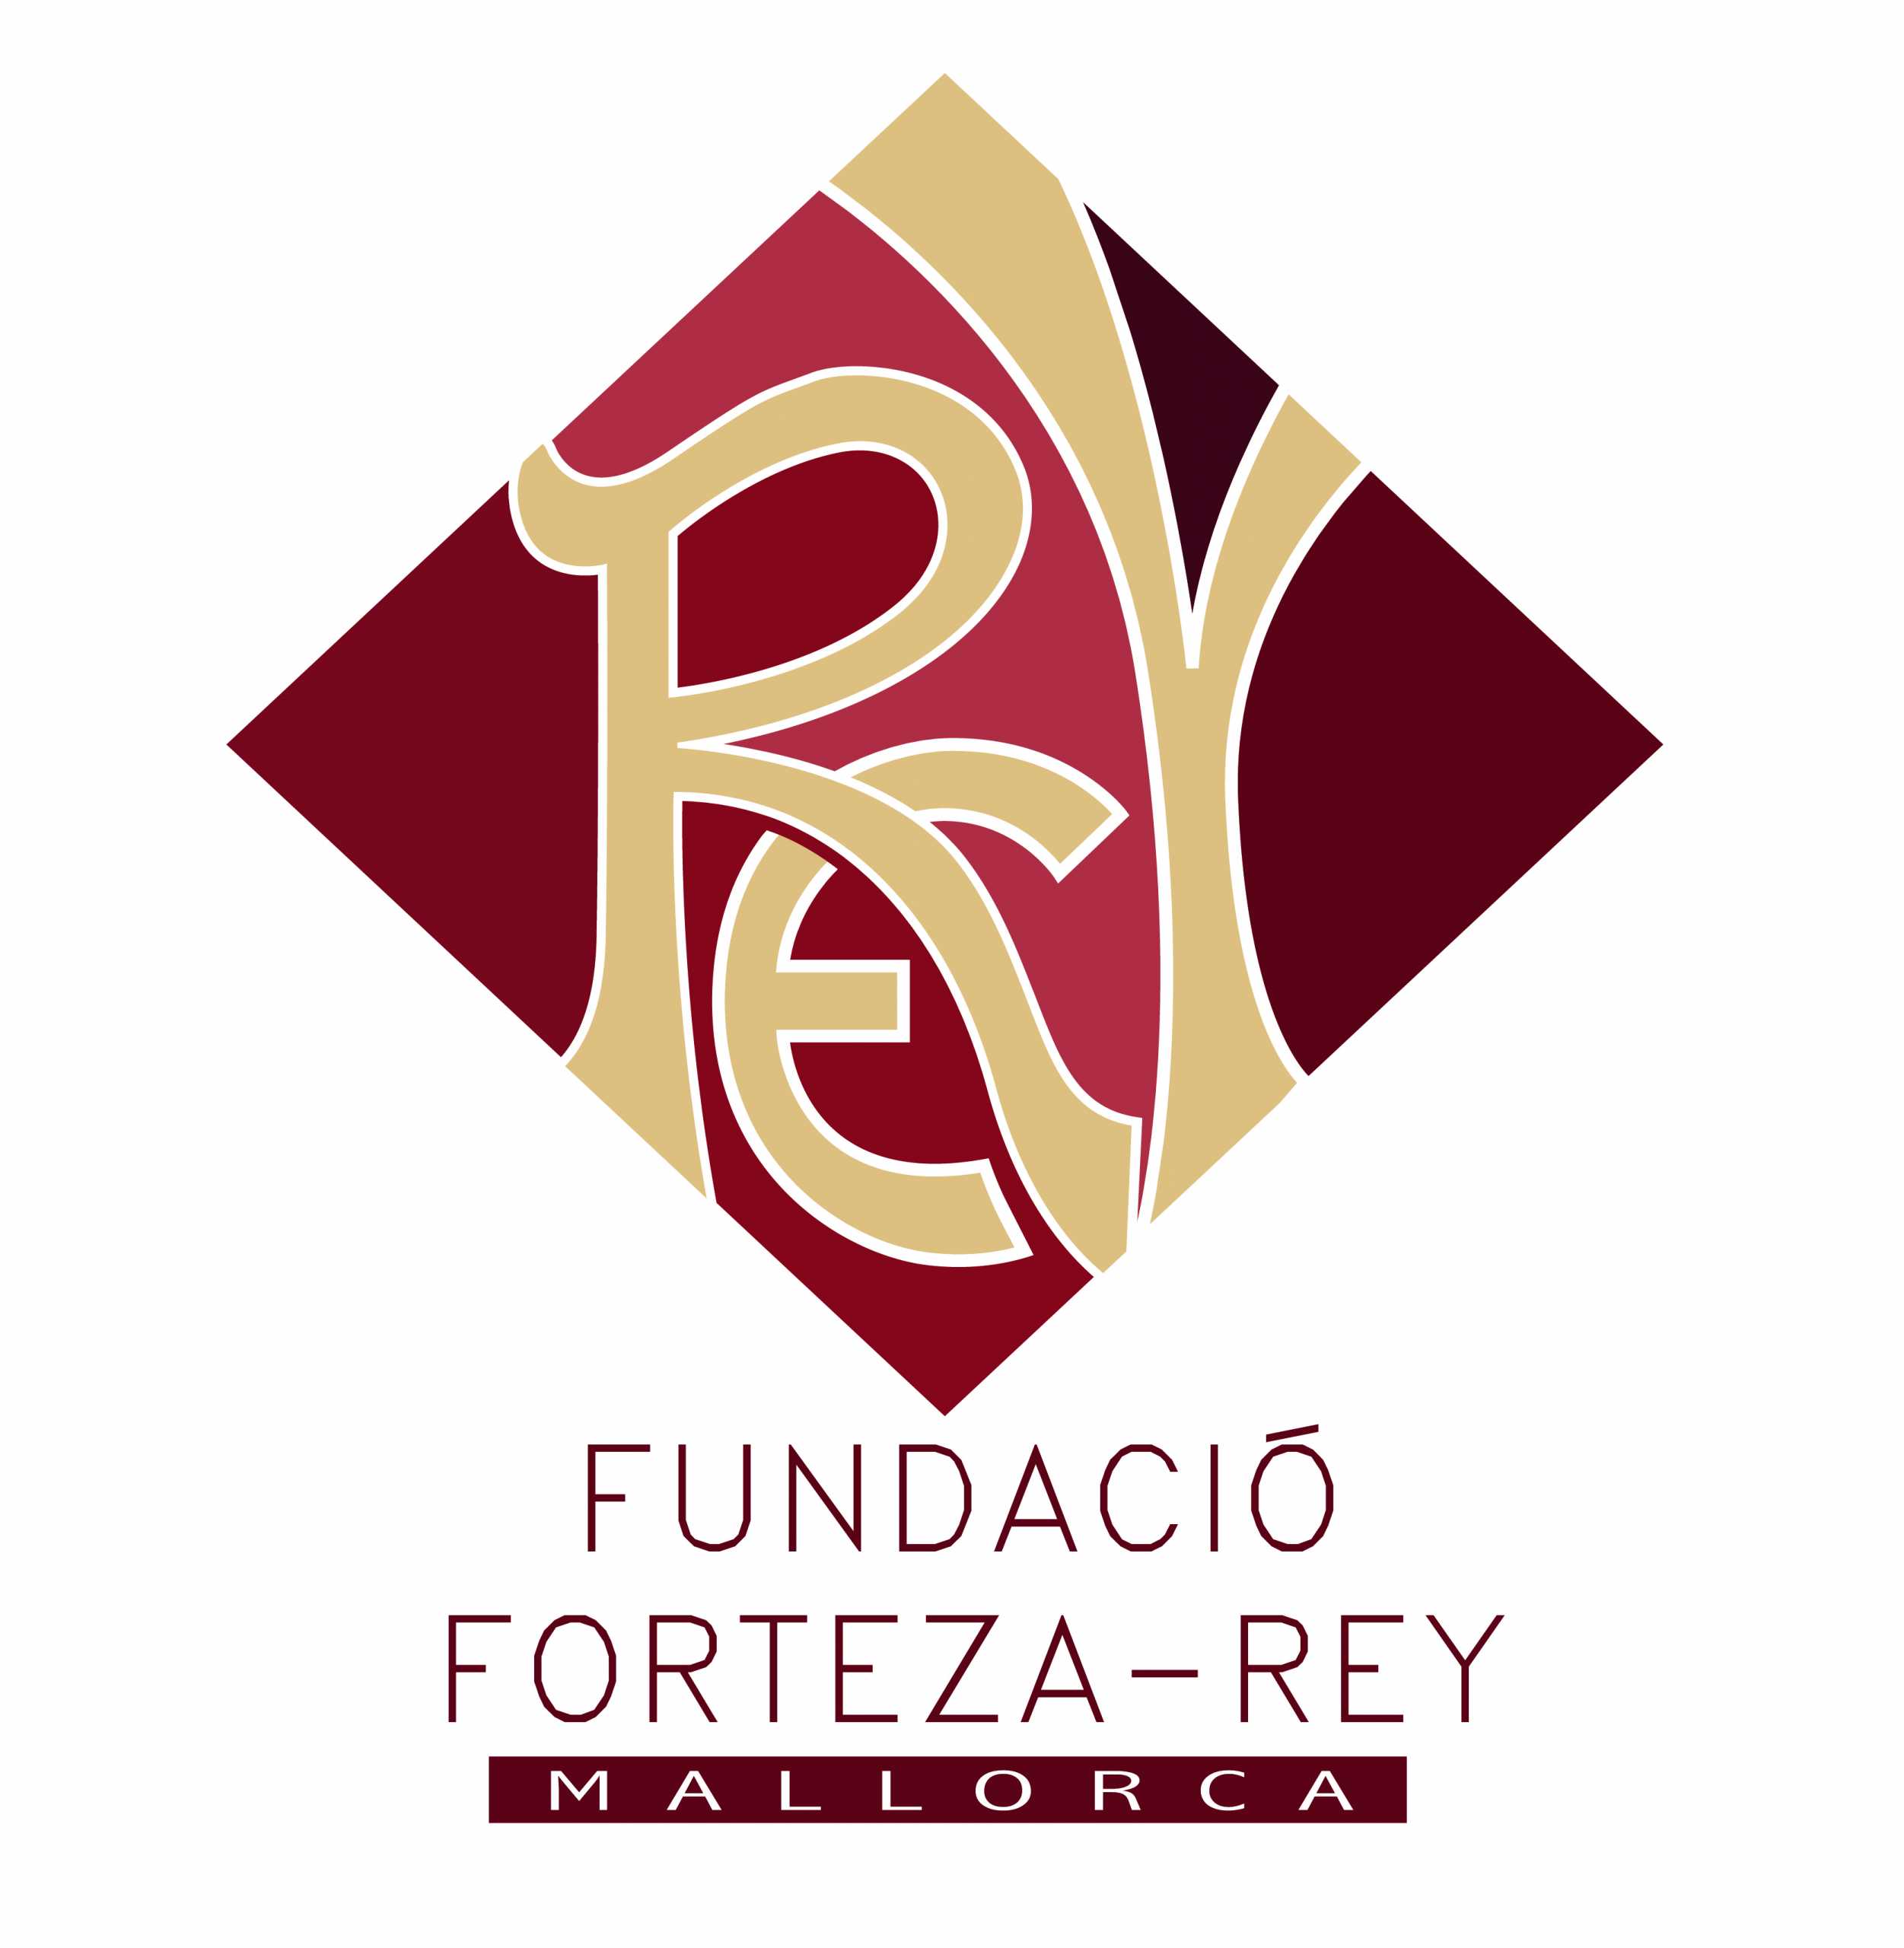 Logo FUNDACIO FORTEZA REY 002 scaled